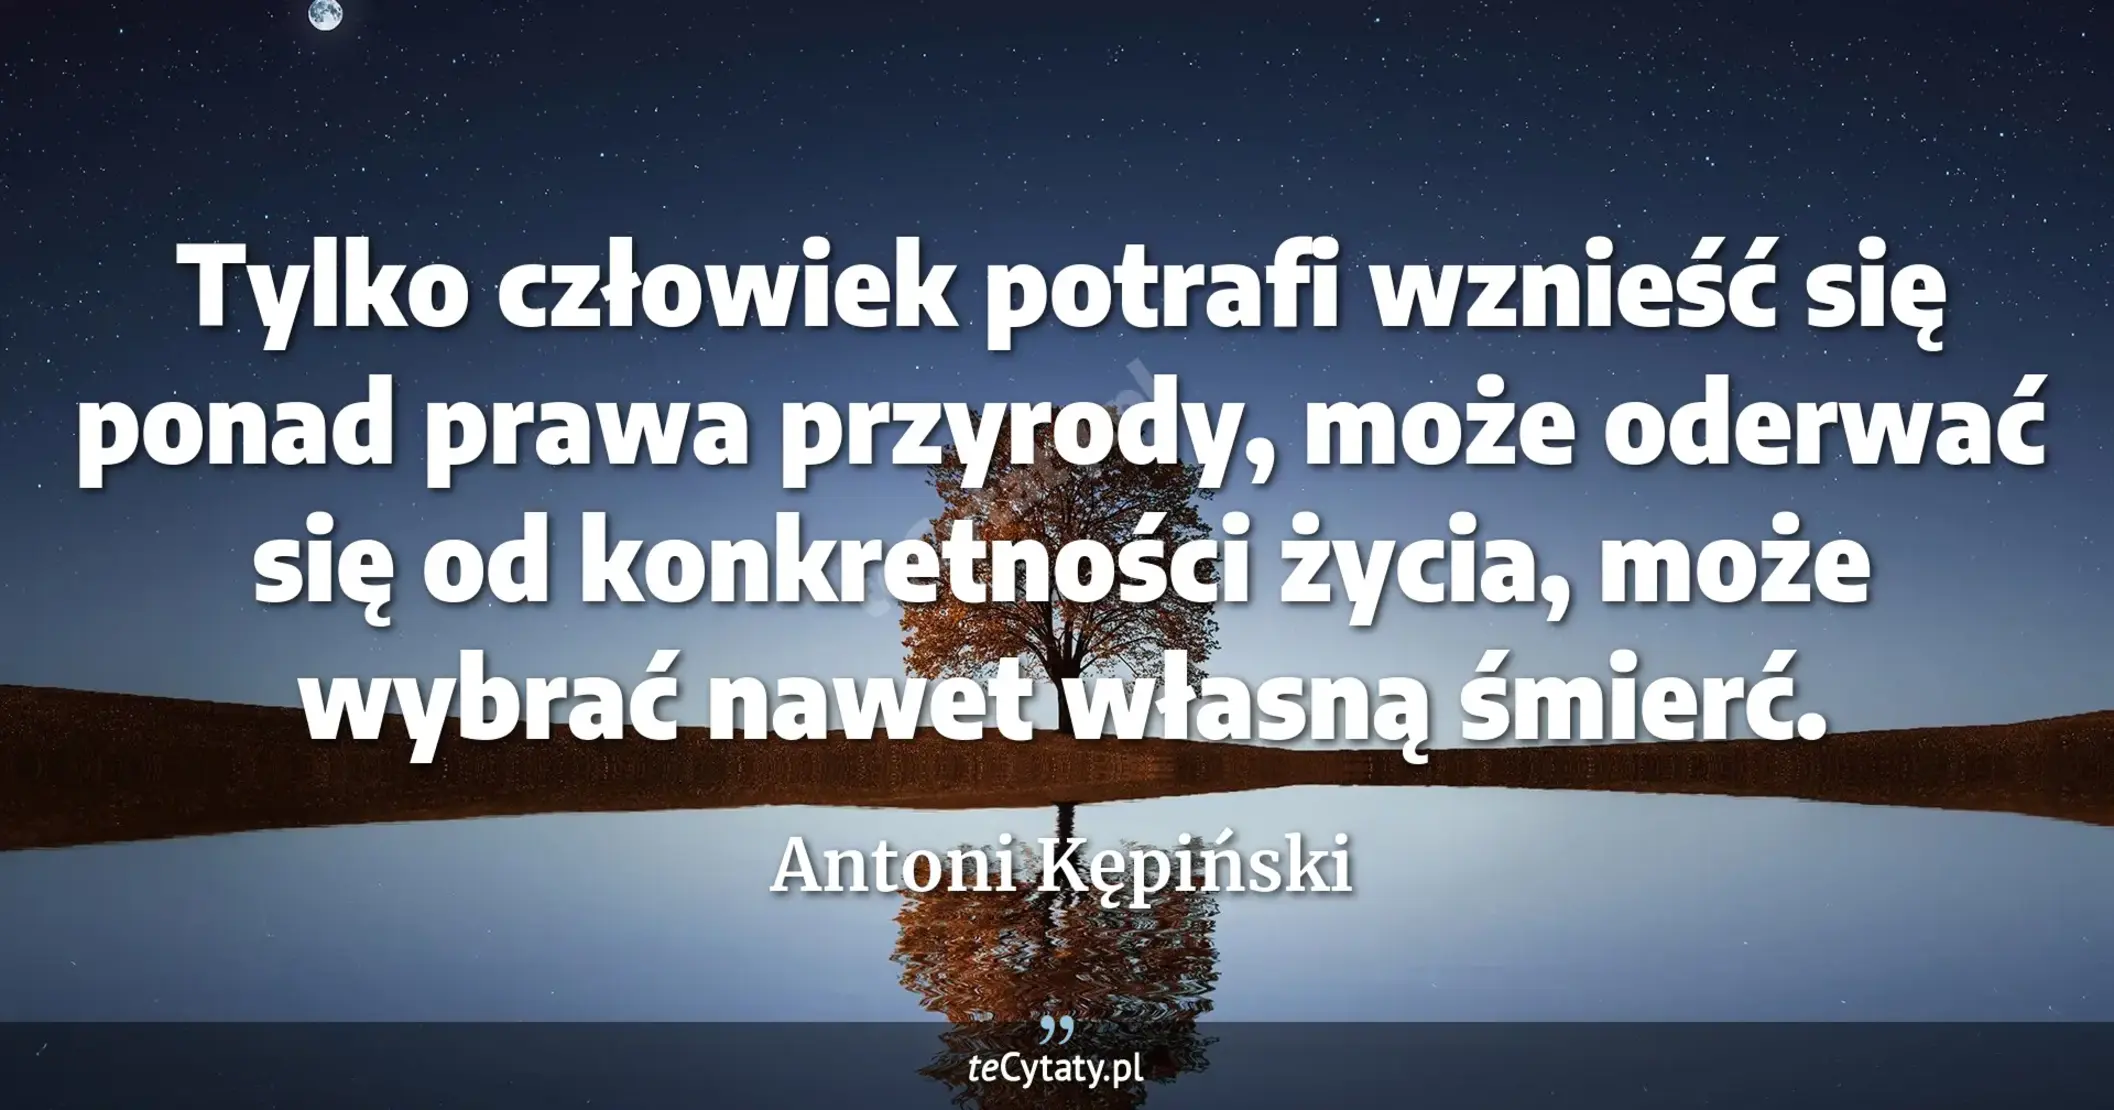 Tylko człowiek potrafi wznieść się ponad prawa przyrody, może oderwać się od konkretności życia, może wybrać nawet własną śmierć. - Antoni Kępiński